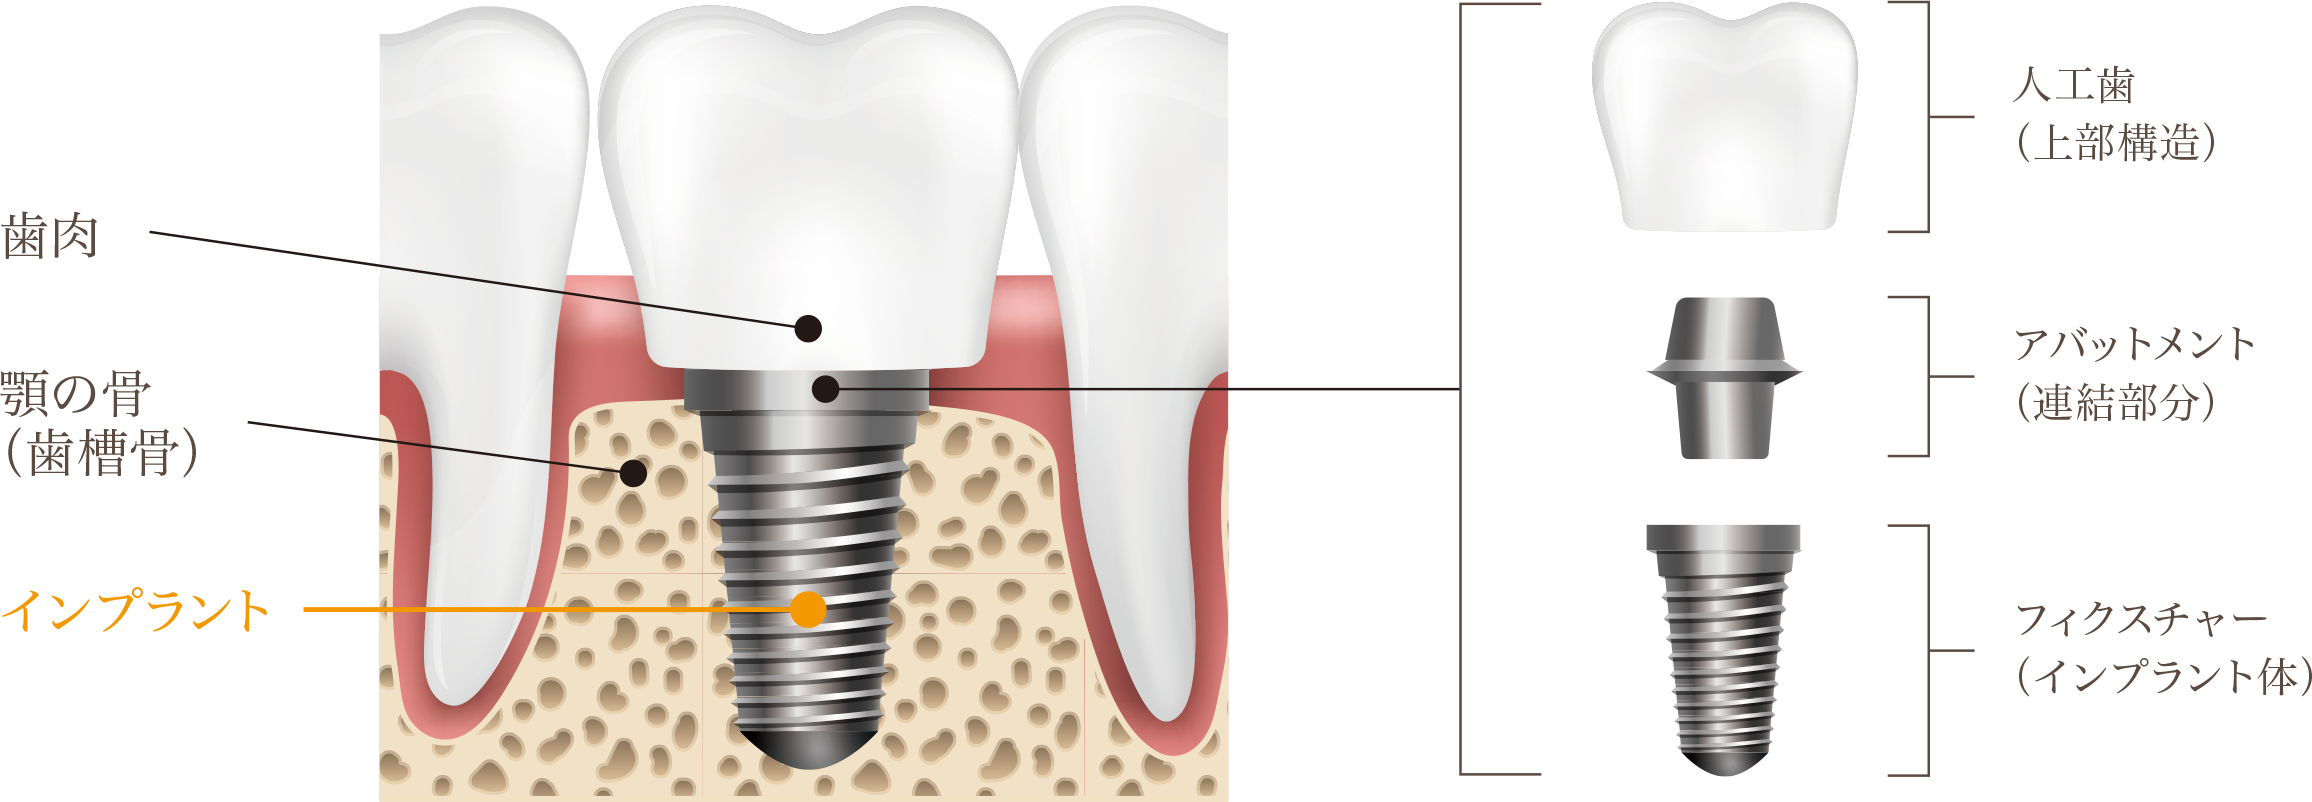 インプラントは天然の歯に近い構造を持つ